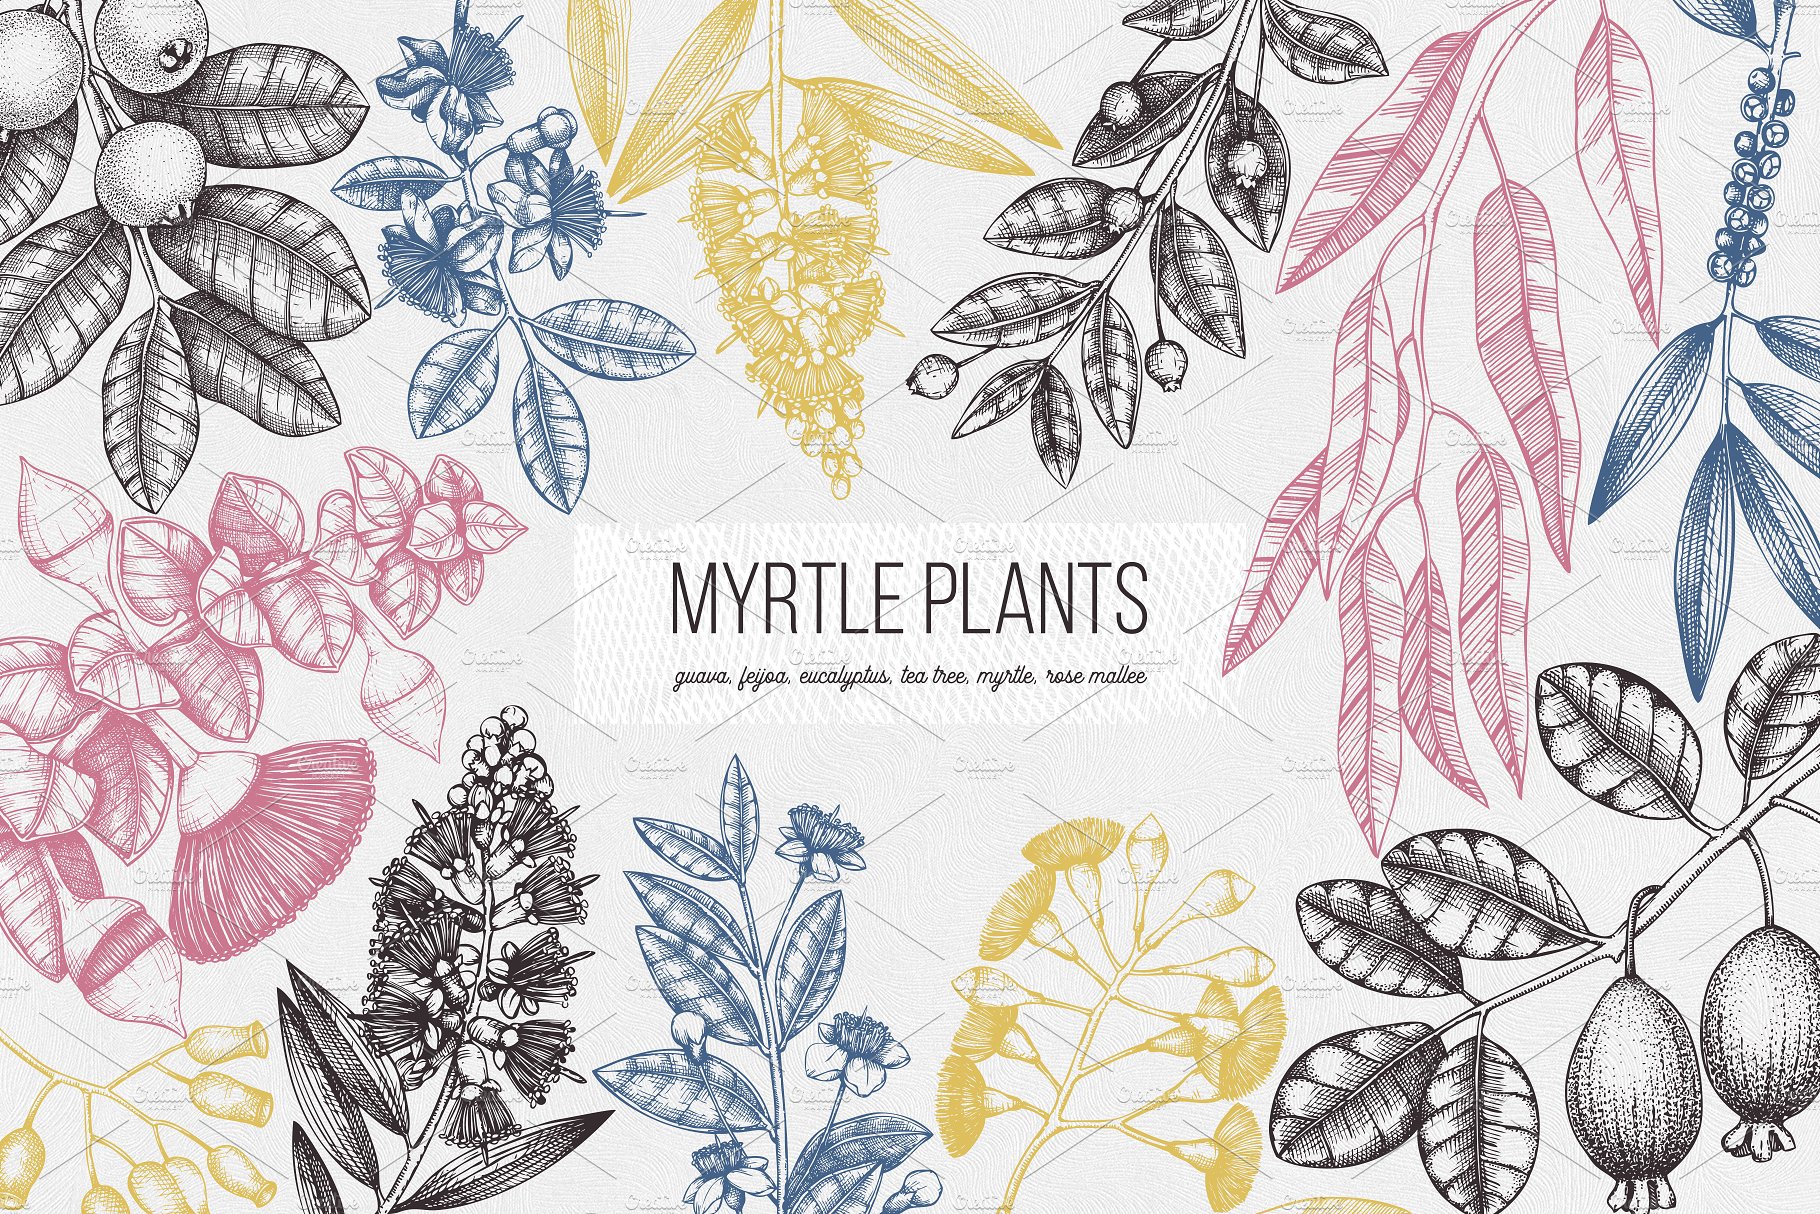 桃金娘属植物素描矢量图形 Vector Myrtle Plants Sketches插图